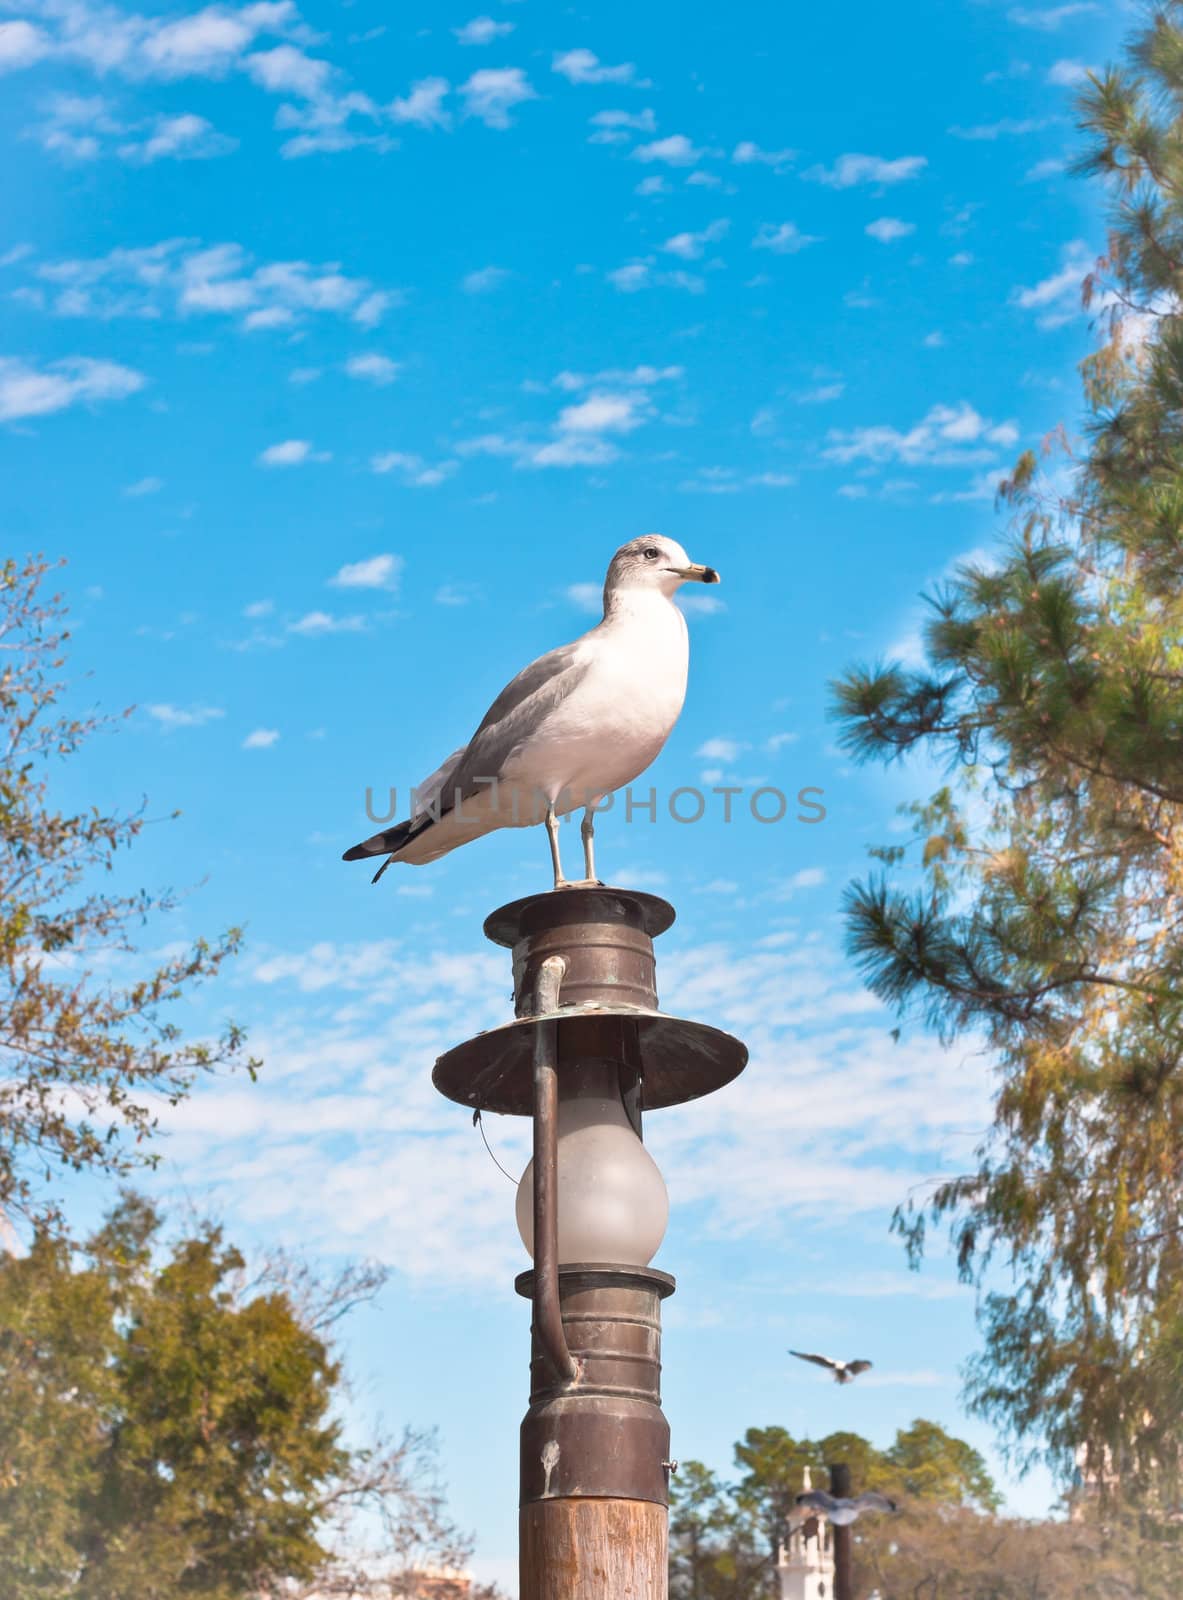 Seagull by trgowanlock